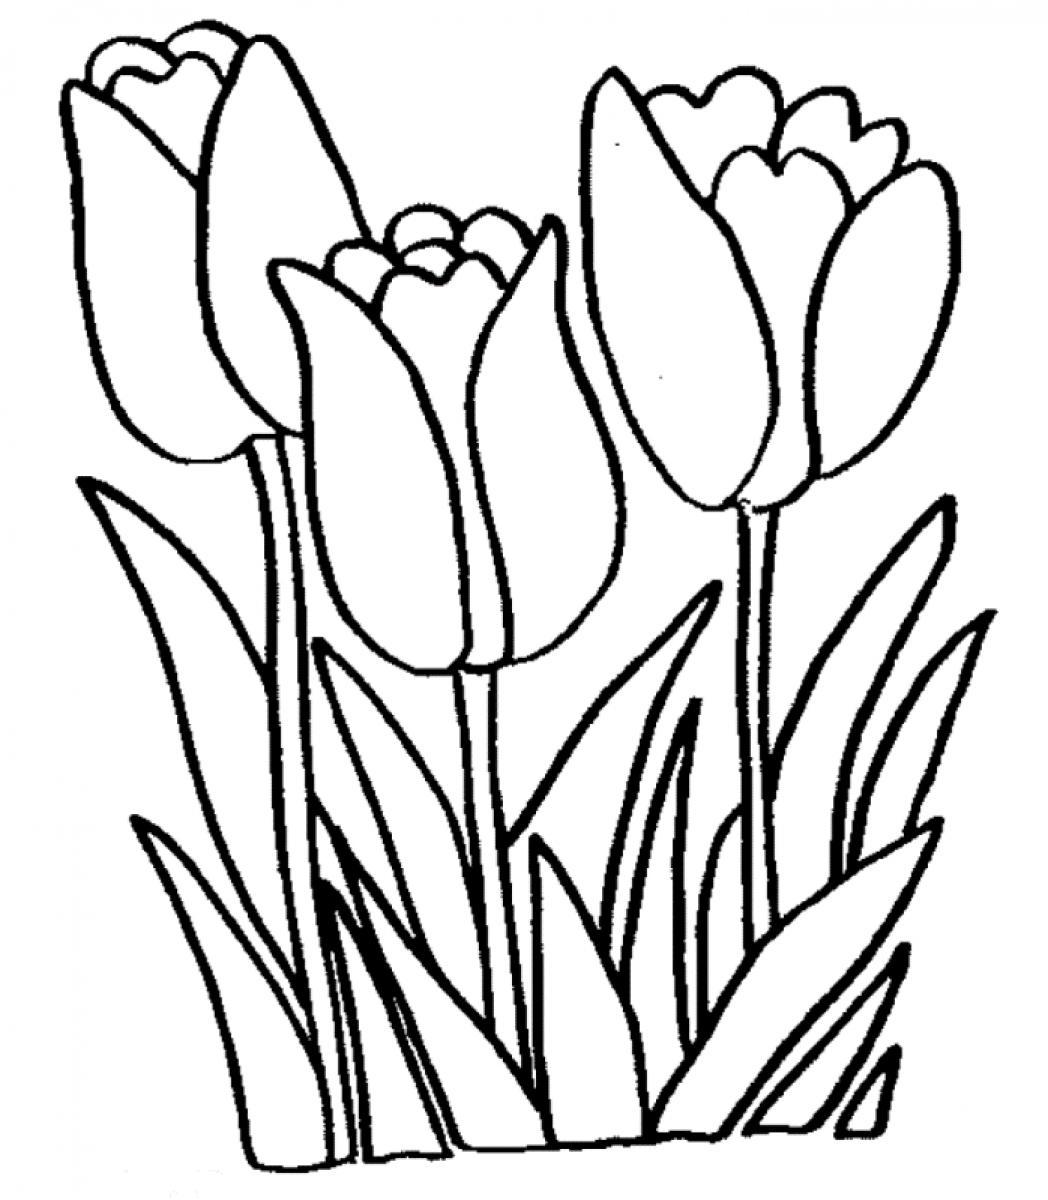 Tulip black and white clipart - ClipartFox